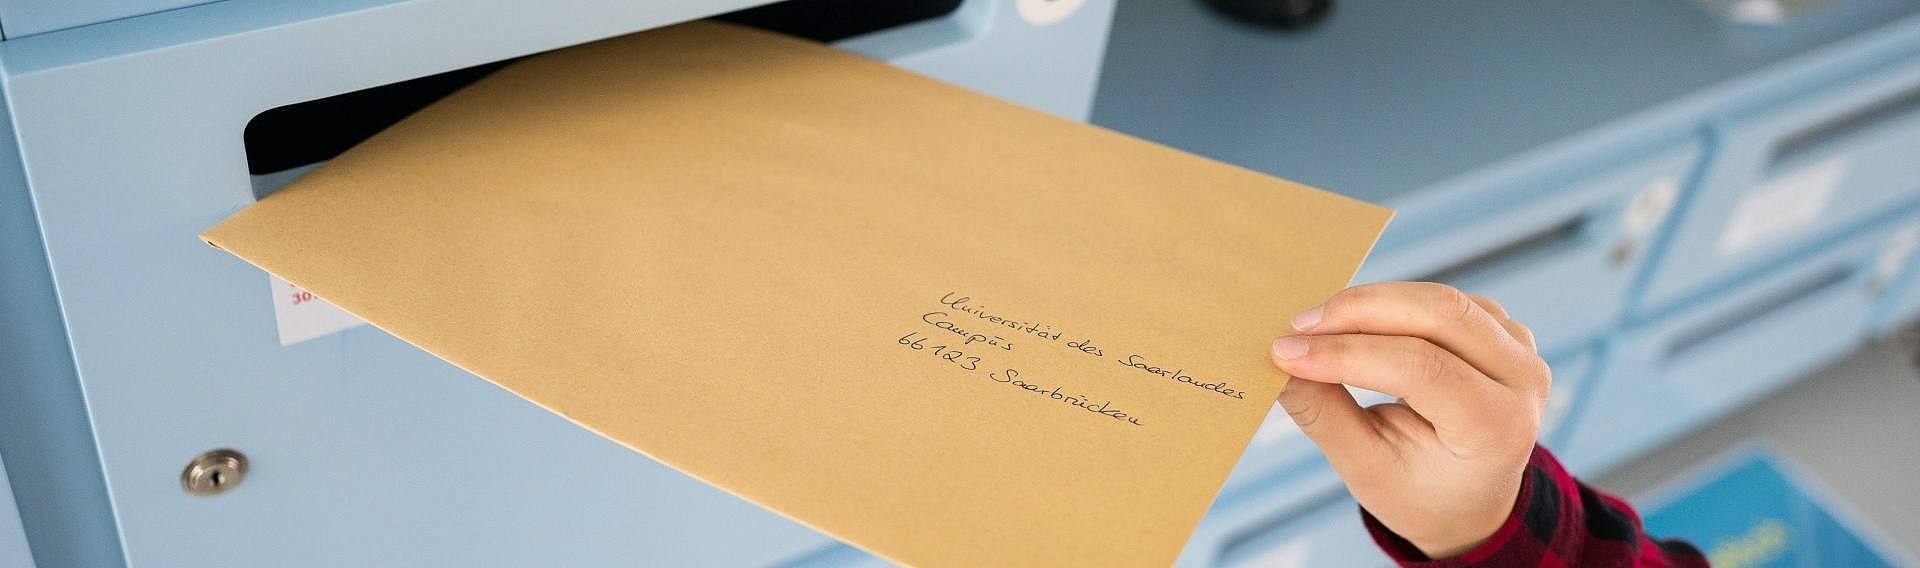 Ein an die Universität des Saarlandes adressierter Brief wird in einen Briefkasten geworfen